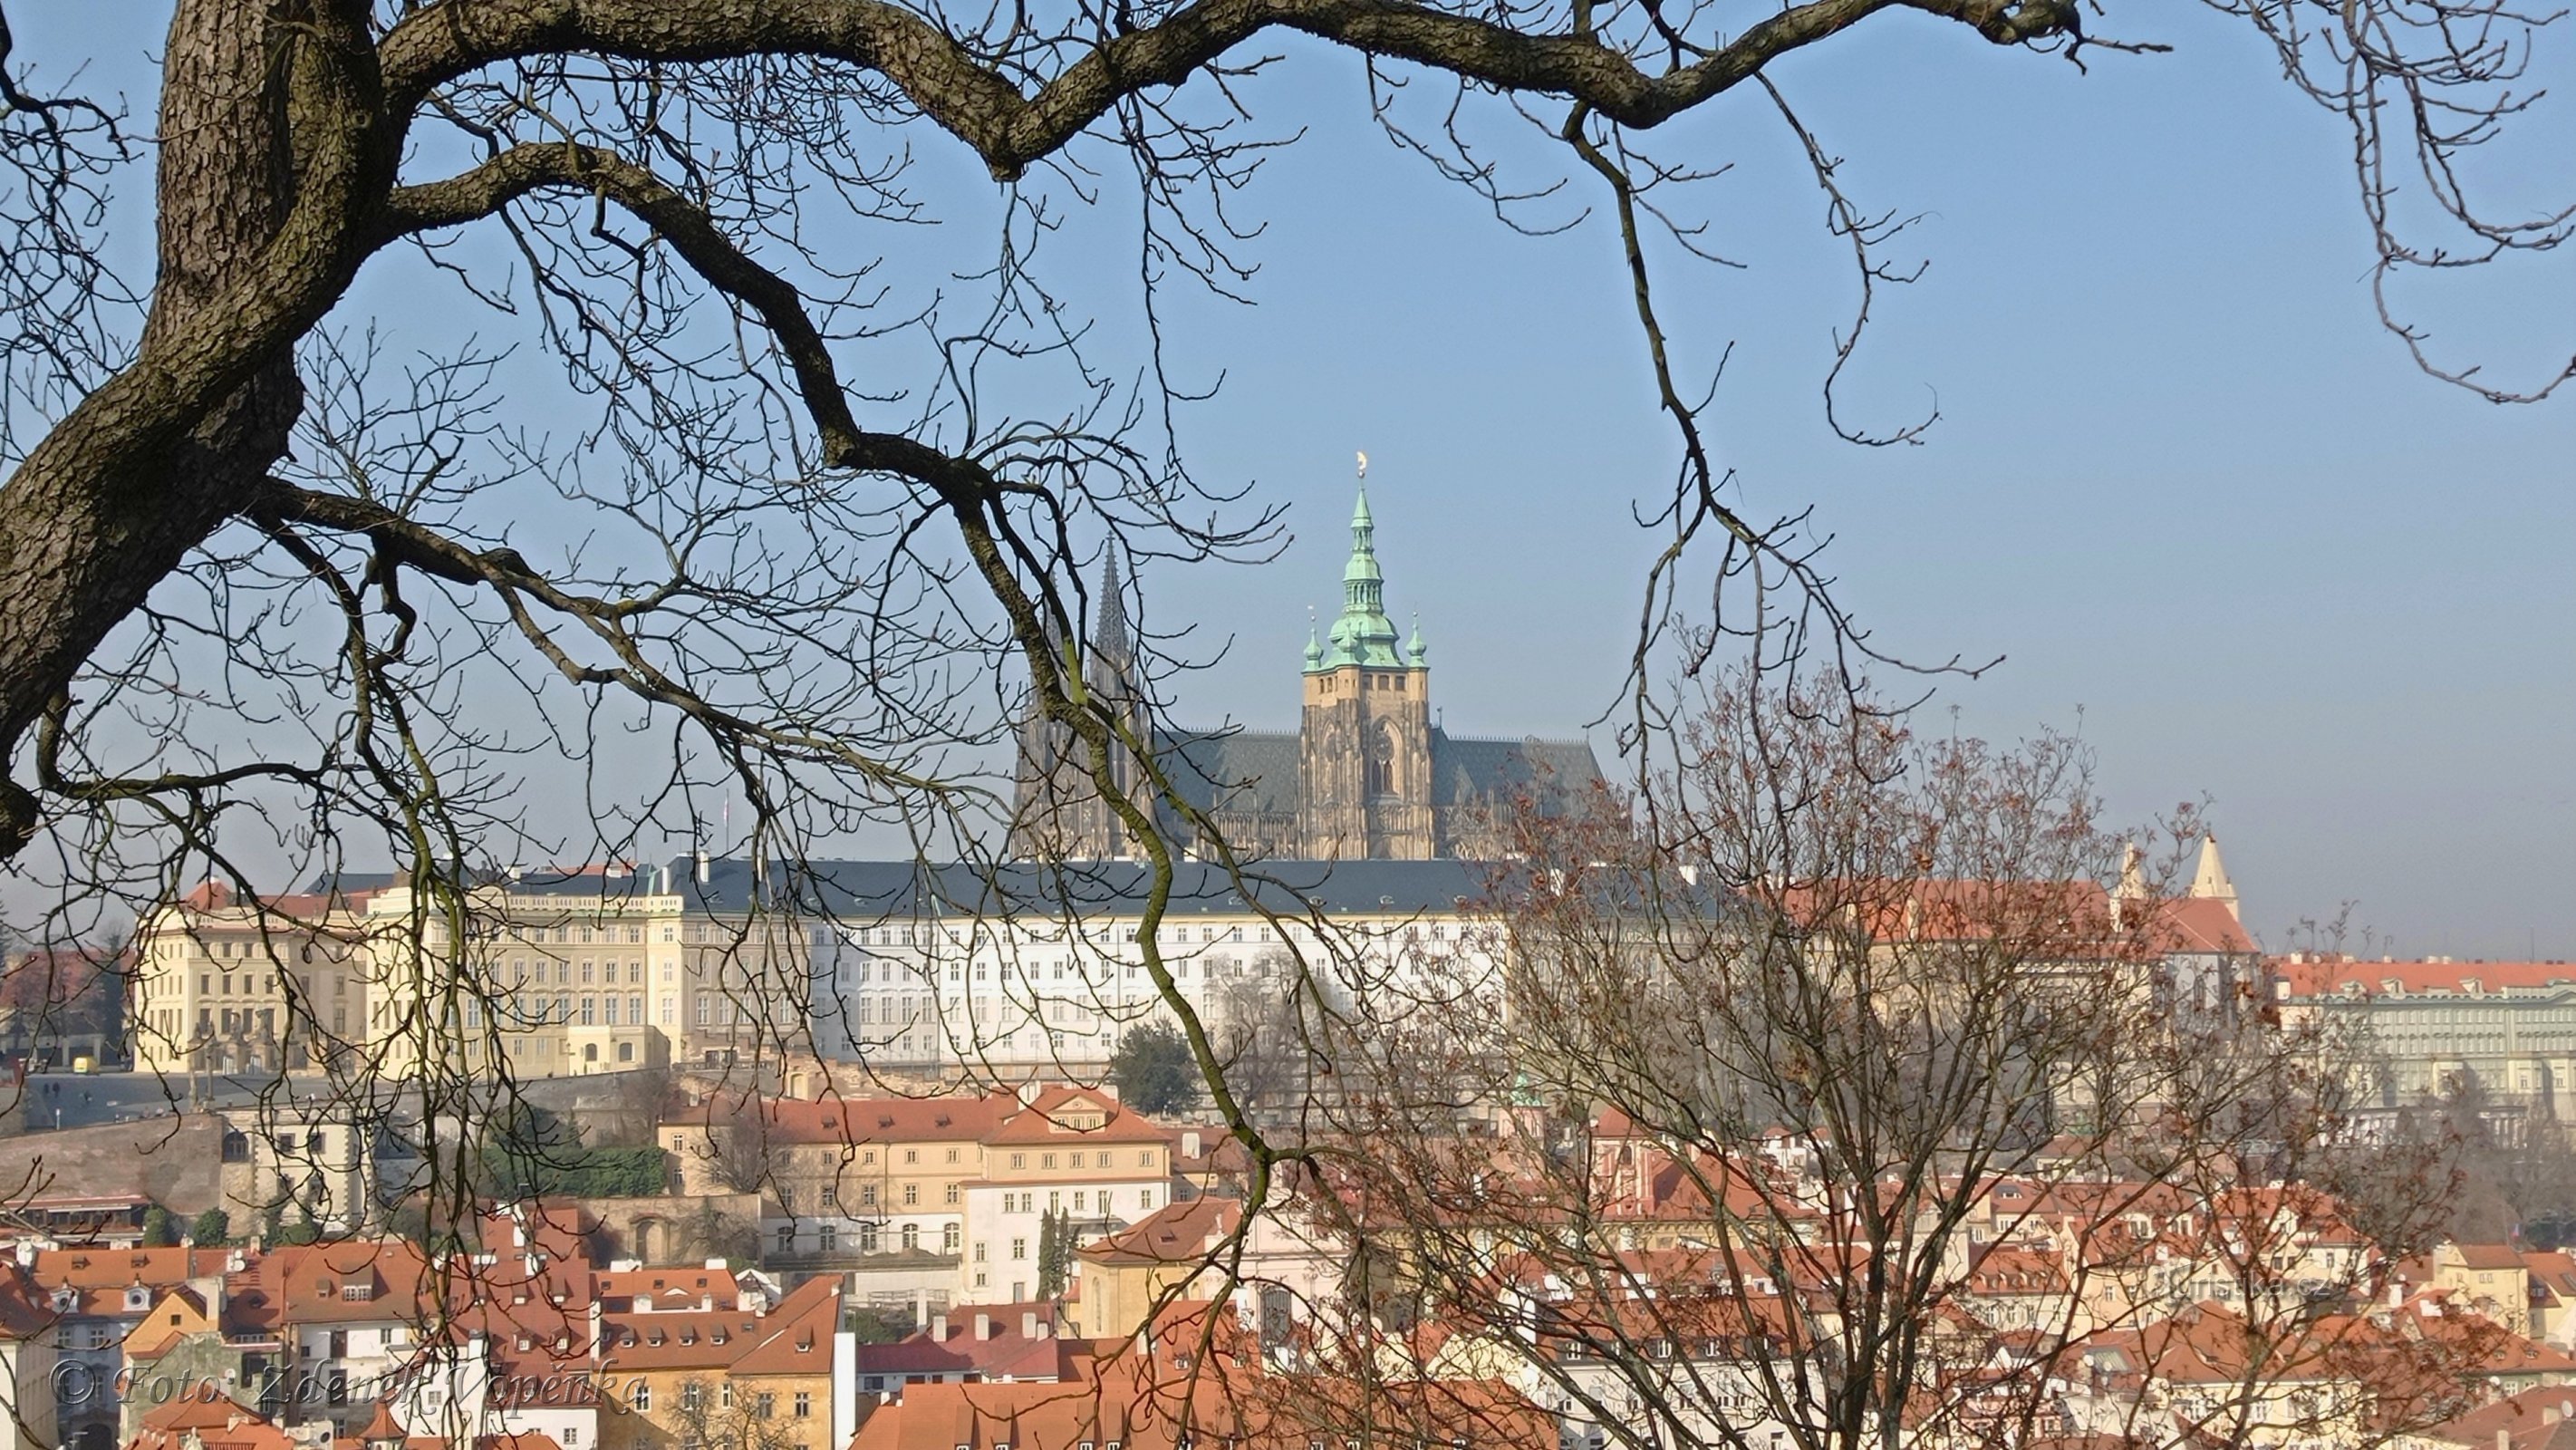 Lobkovická 花园的布拉格城堡。